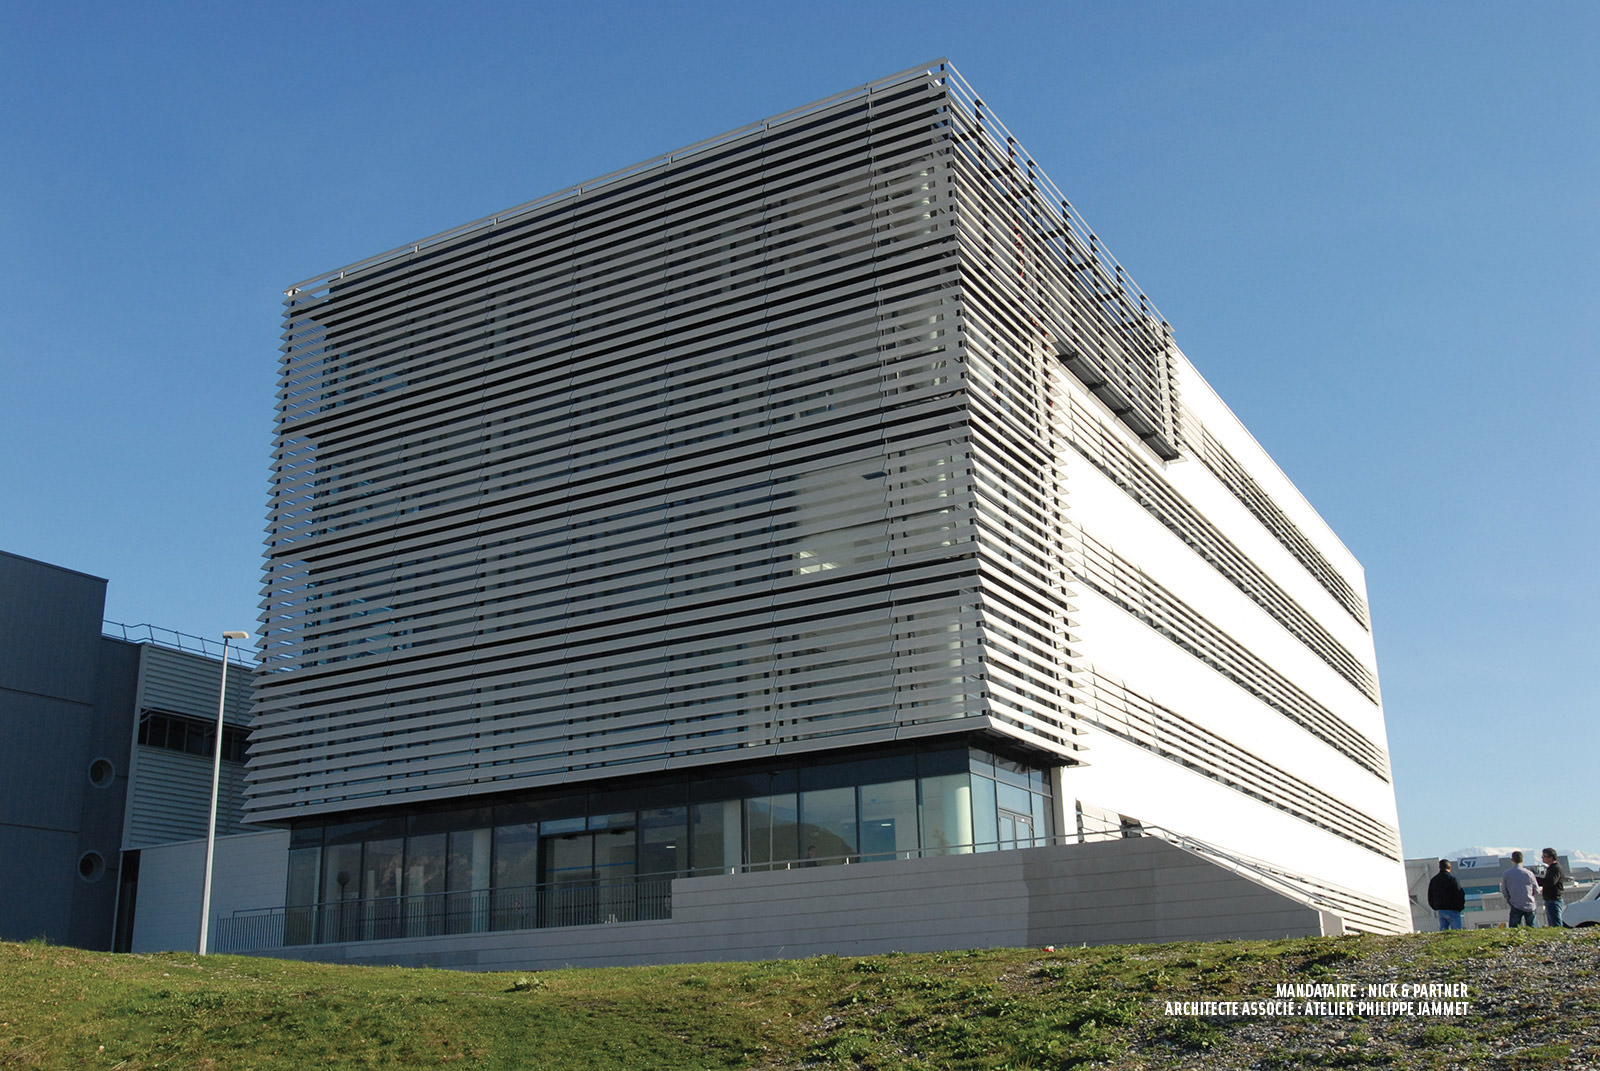 ILL Science BuildingBâtiment de laboratoires pour l’ILL – ESRF - Grenoble<br>Mandataire : Nickl & Partner Architekten<br>Architecte associé : atelier Philippe Jammet Architecte